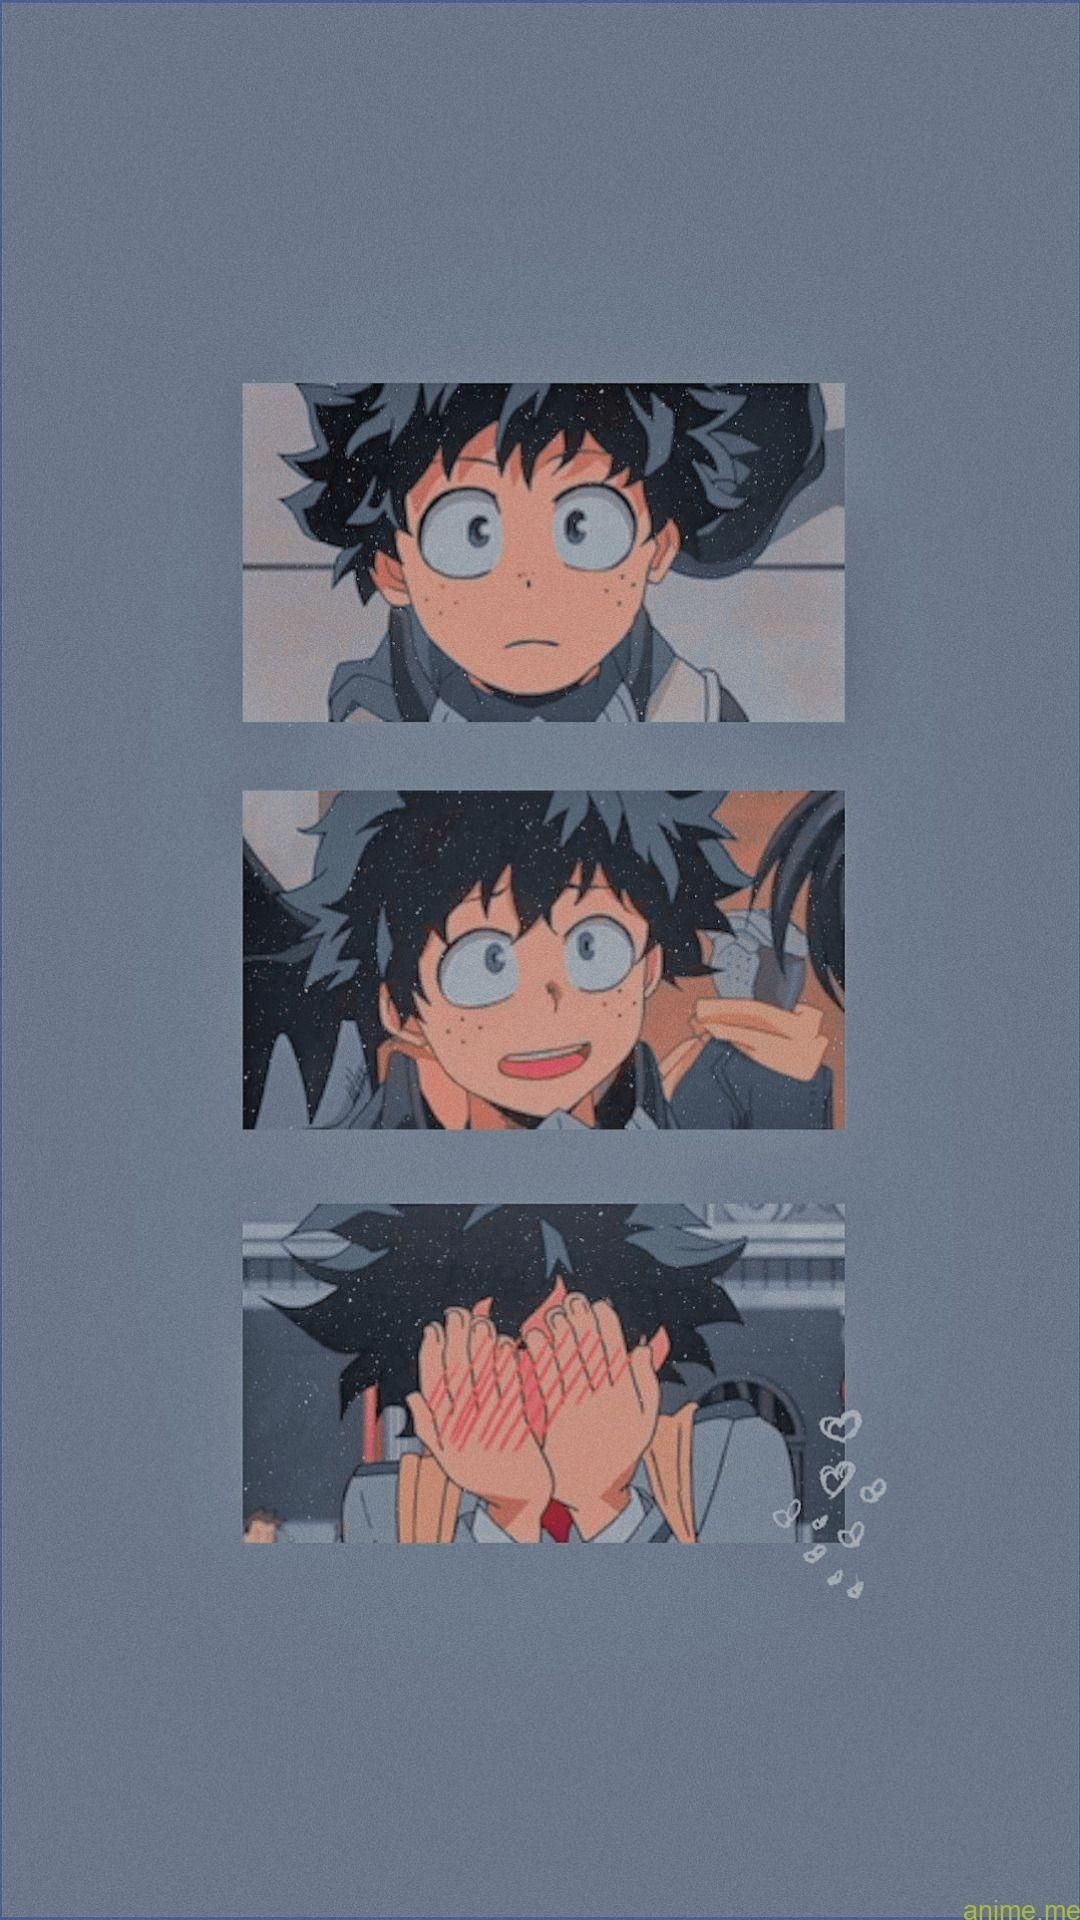 Anime Icon Wallpaper Free Anime Icon Background